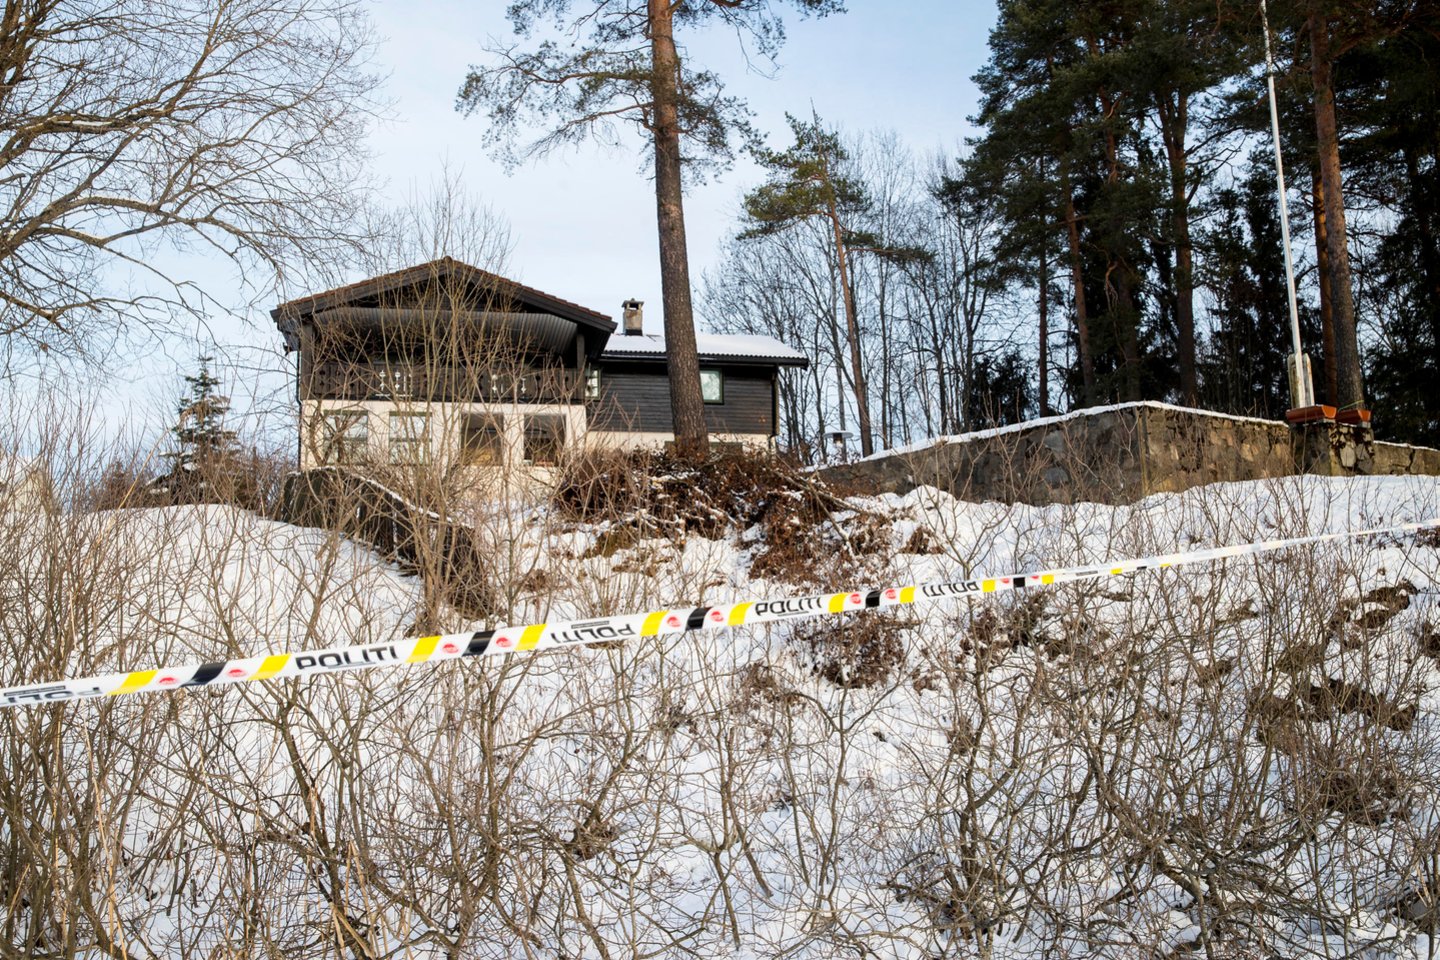   Netoli Oslo gyvenusi milijardierių šeima palūžusi. Iš savo namų dingus A.E.Hagen policija nerado nei nusikaltėlių, nei jos gyvos ar mirusios.<br>Reuters/Scanpix nuotr.